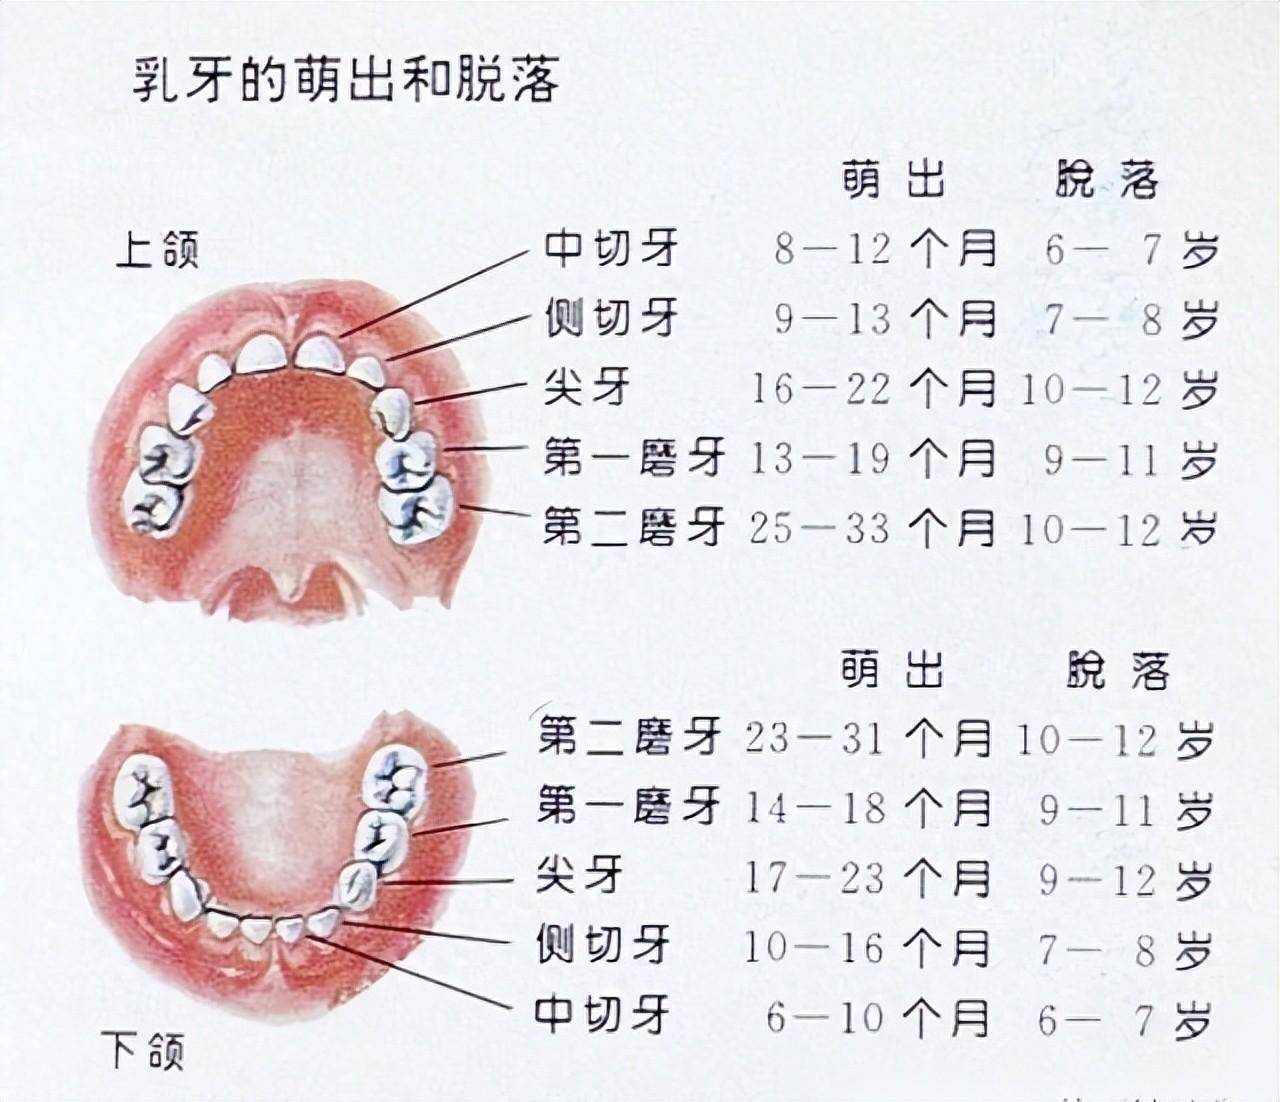 儿童换牙顺序图如下:12